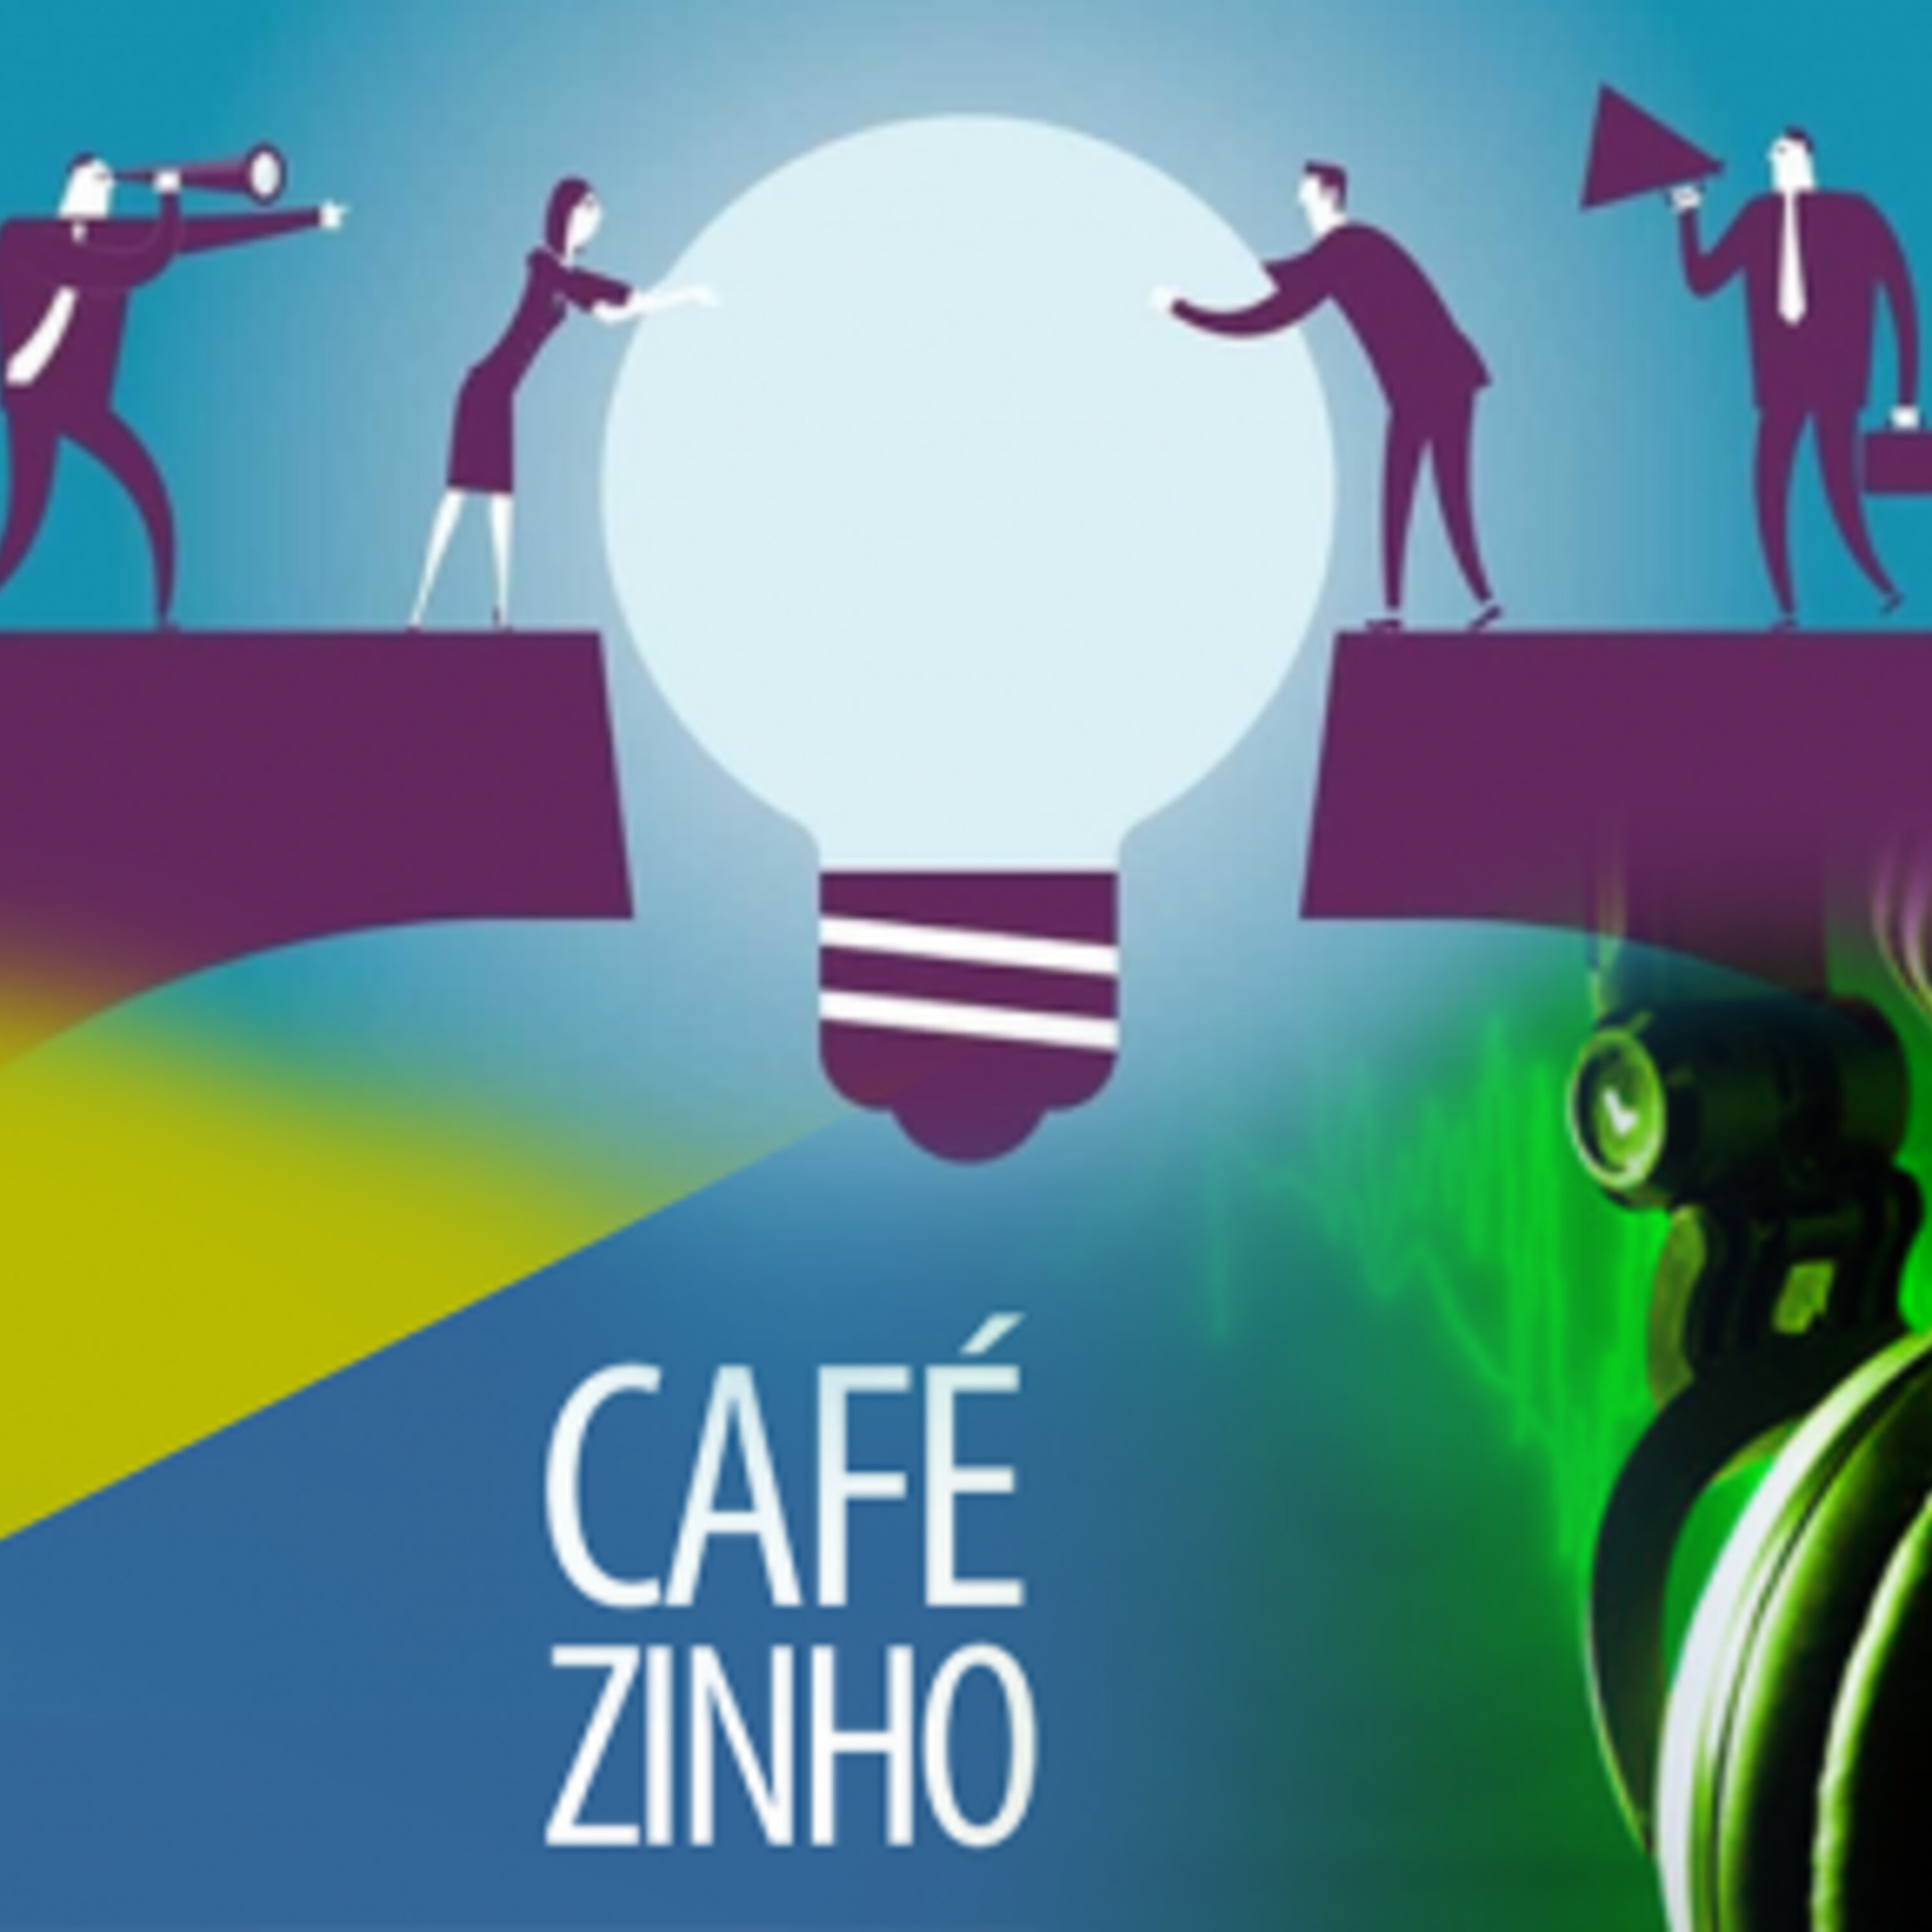 Cafezinho 296 – Conhecimento ao seu alcance